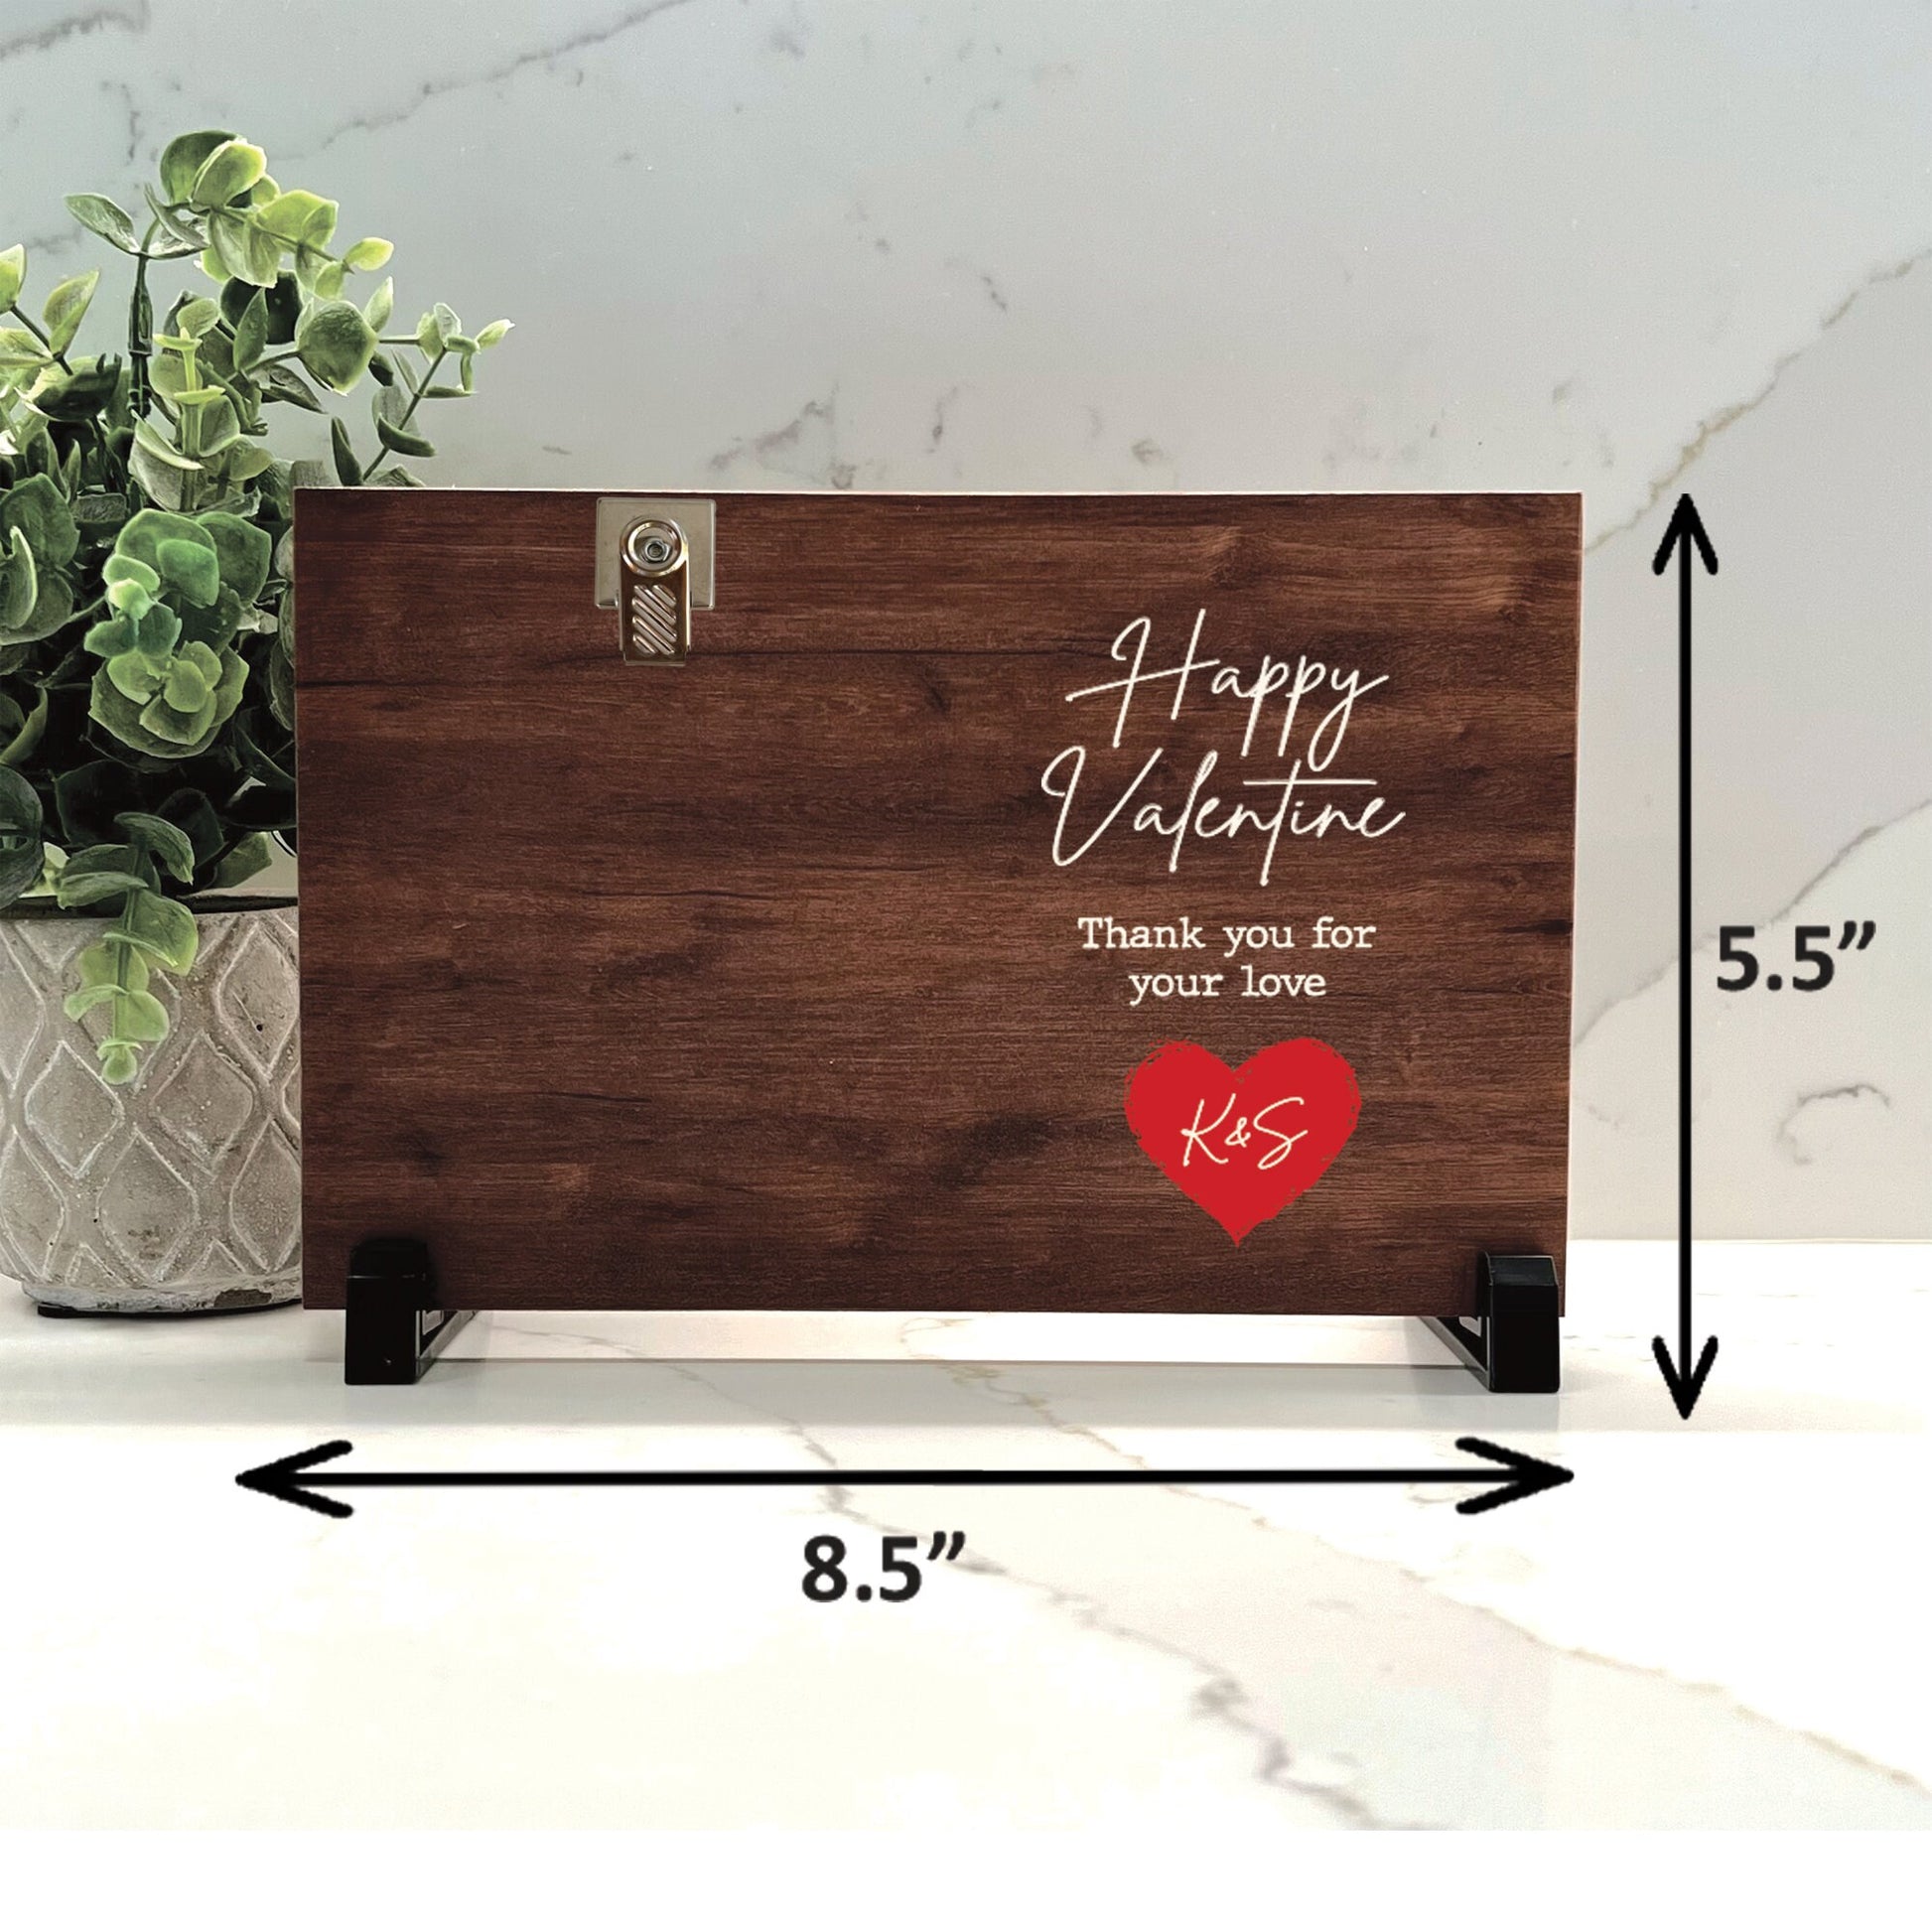 Valentines Frame, Valentine’s Day Gift, Personalized wood frame for valentine's day gift for husband, wife, girlfriend, boyfriend, fiance